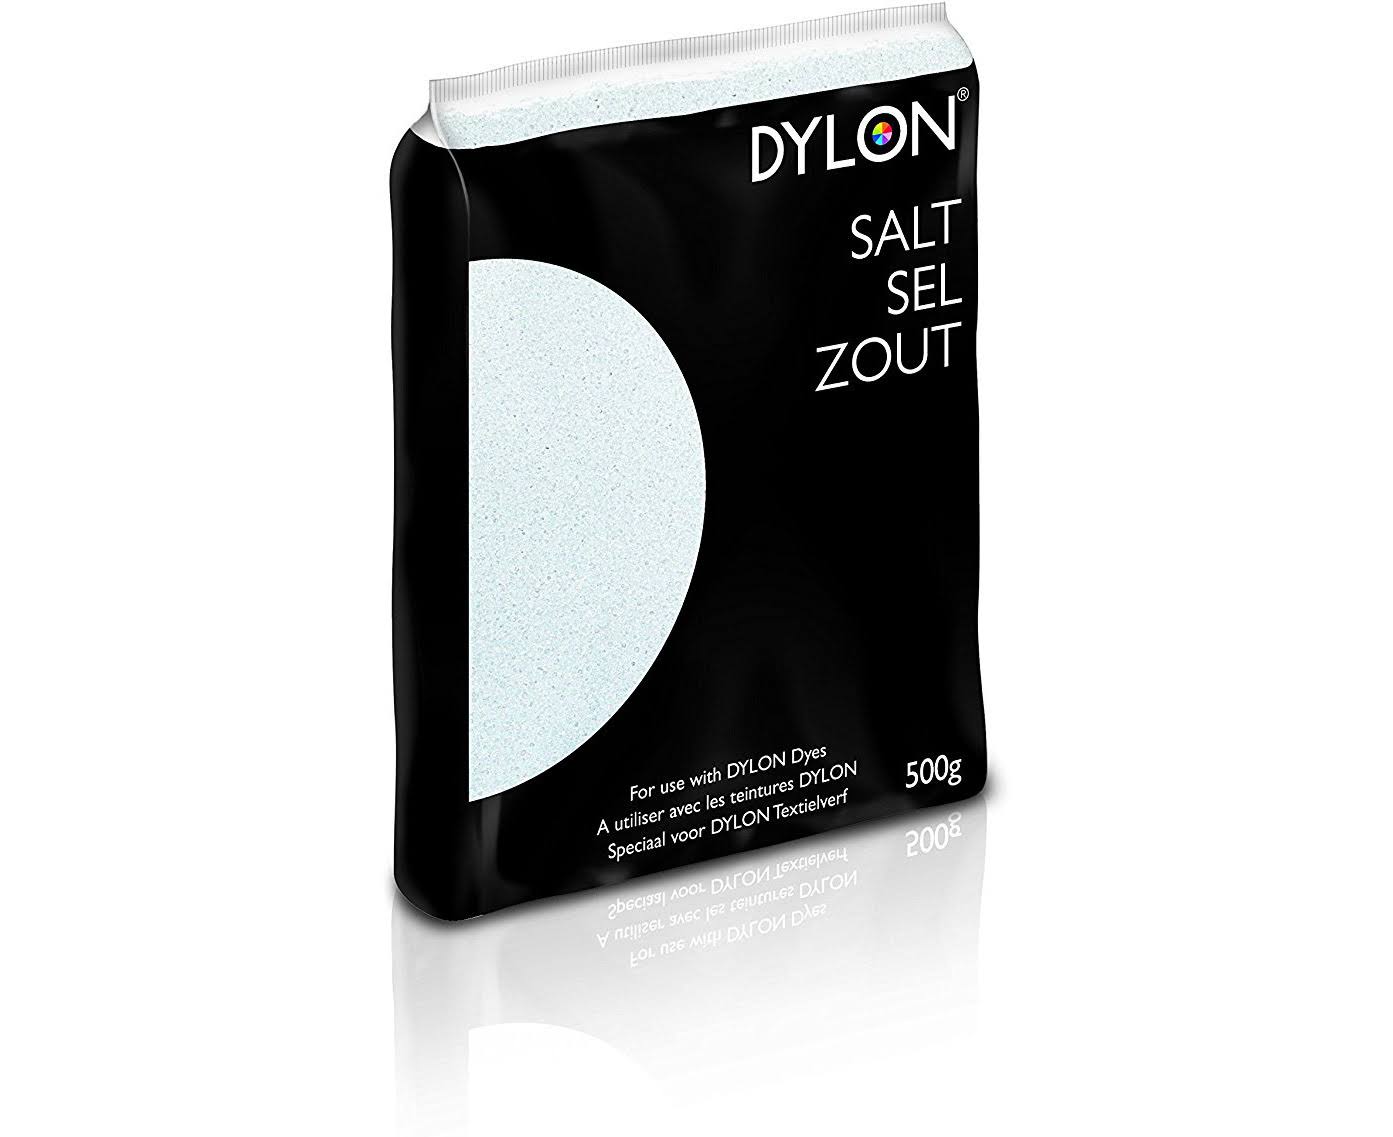 Dylon Dye Salt - 500g